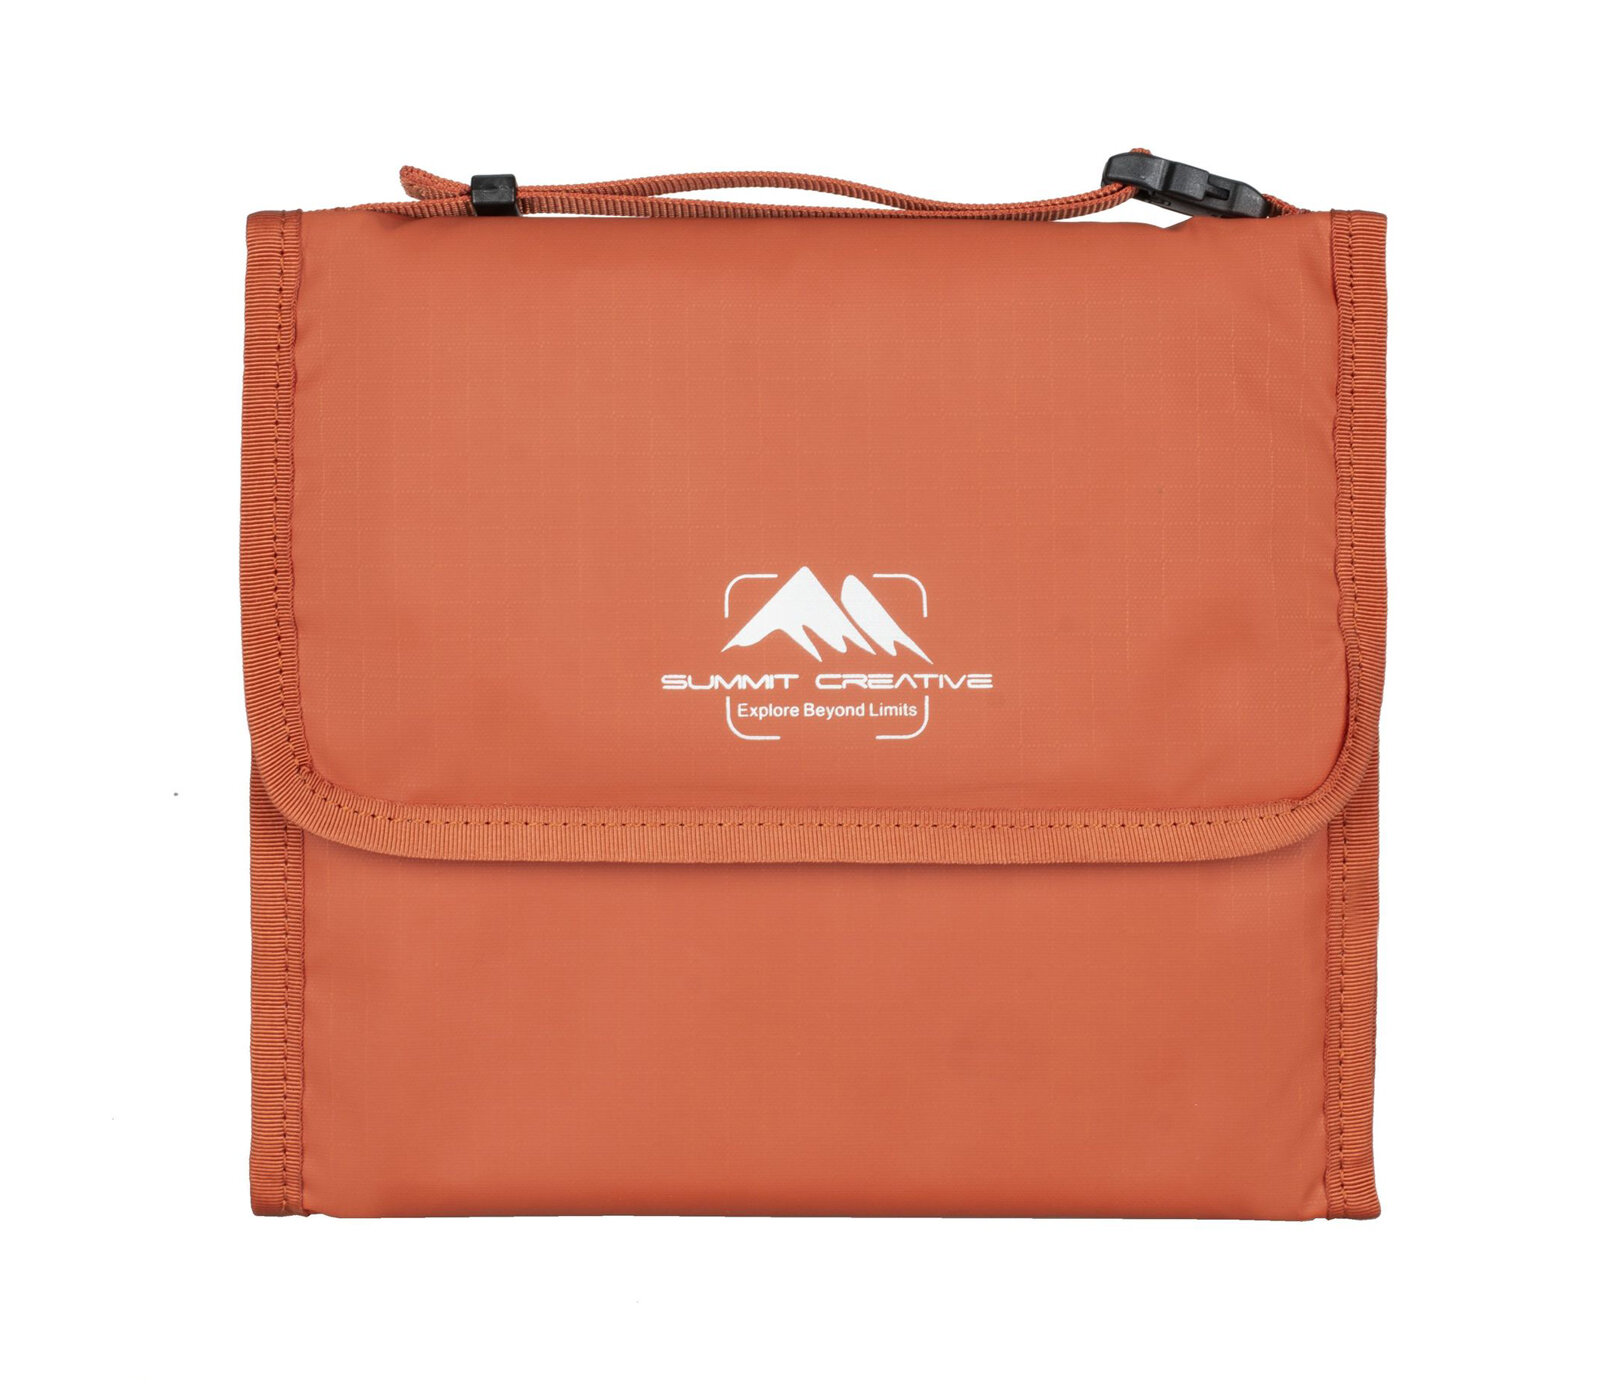 Чехол Summit Creative Filter Bag 150-5, для 5 светофильтров до 150 мм, оранжевый